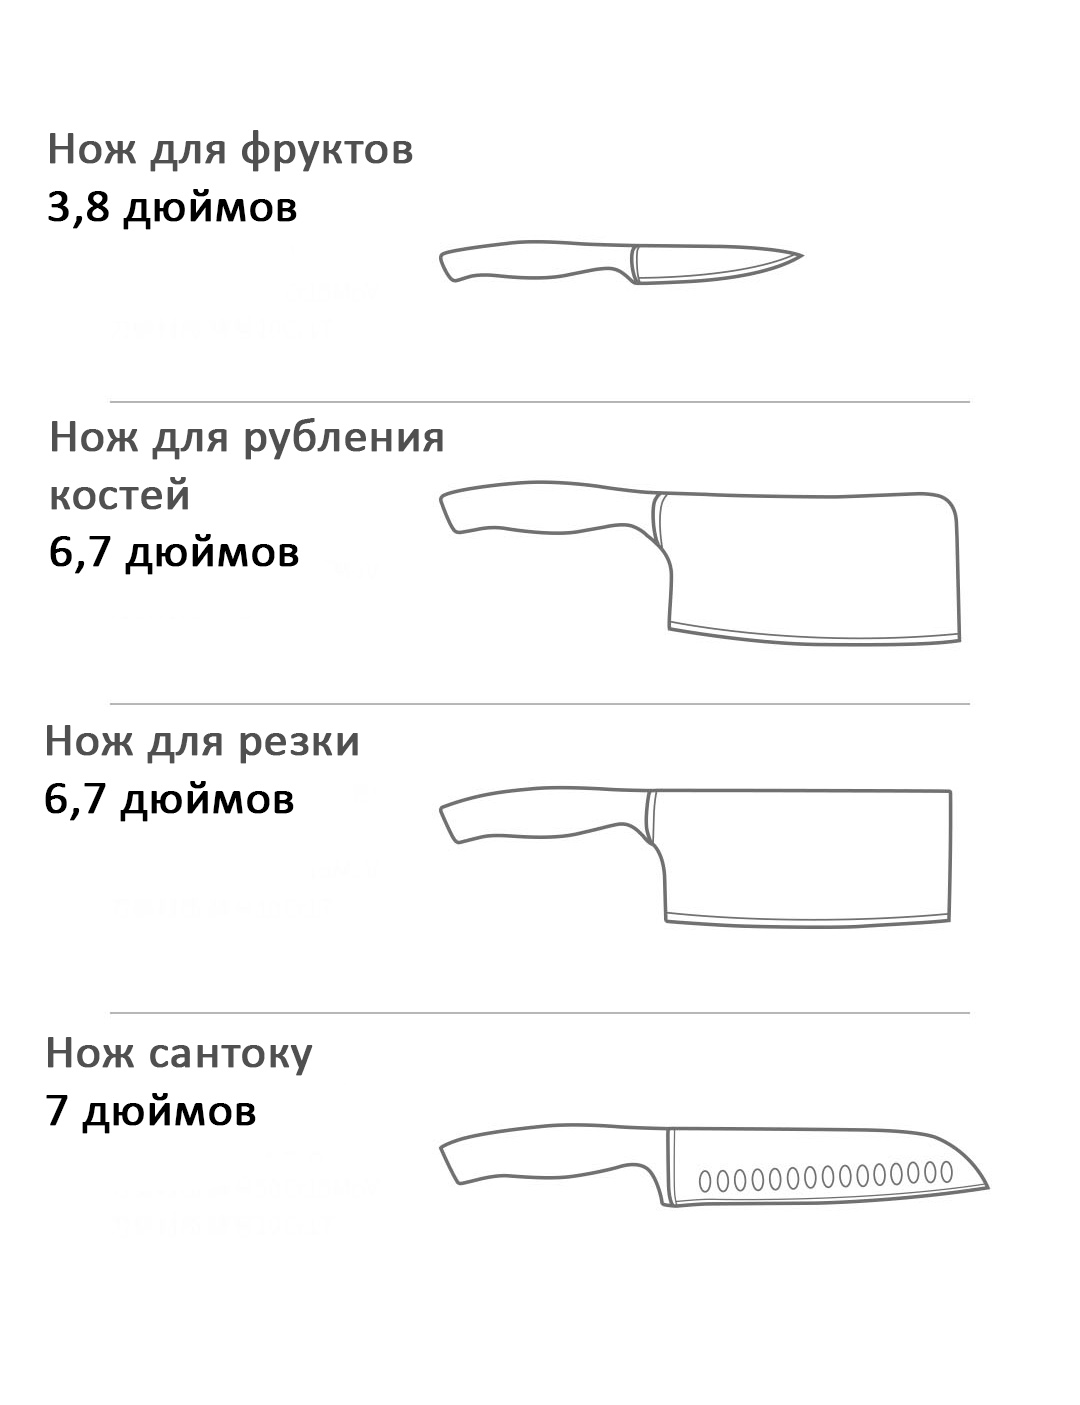 Набор кухонных ножей Xiaomi габариты 1